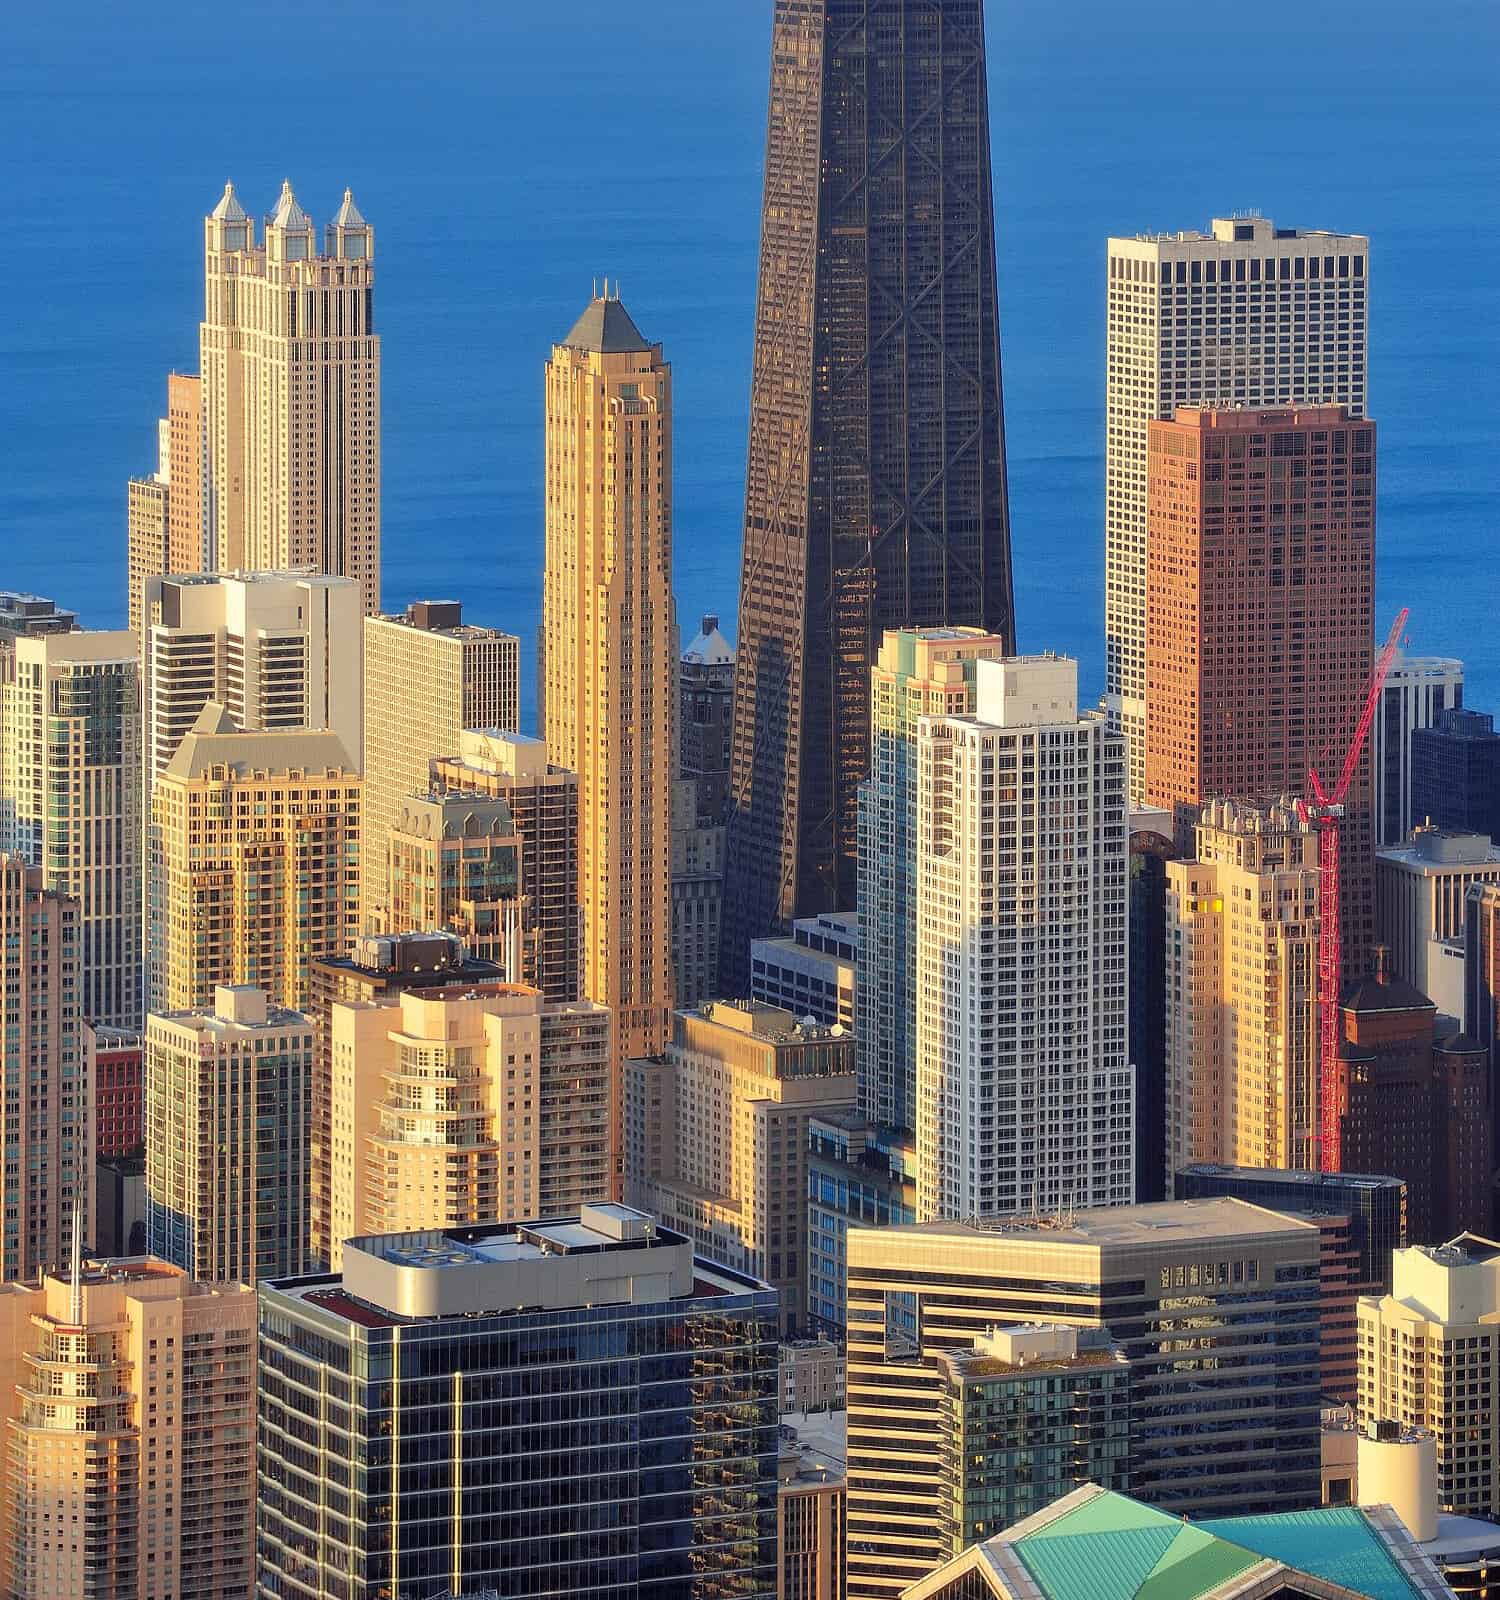 Vista aerea del centro di Chicago al crepuscolo con grattacieli e skyline della città sul lungolago del Michigan.